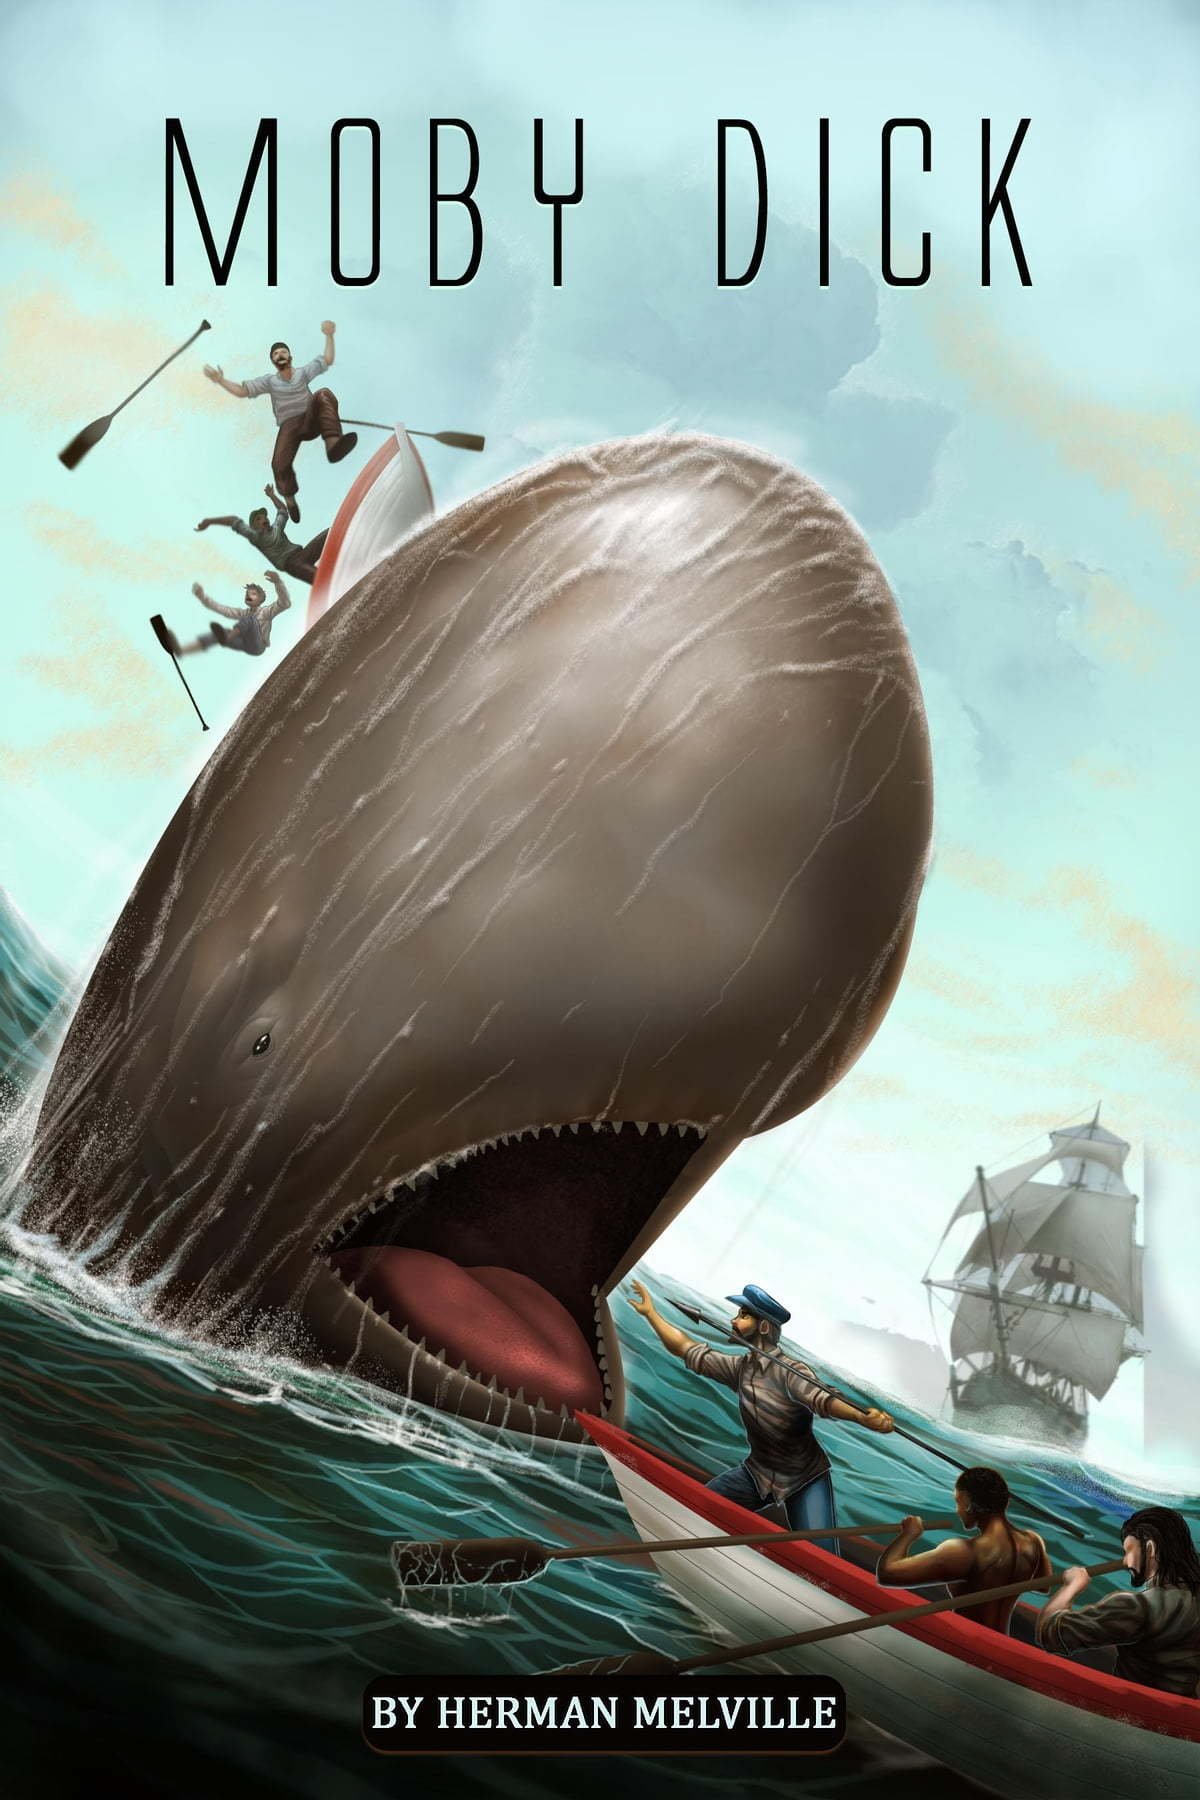 Portada del libro Moby Dick